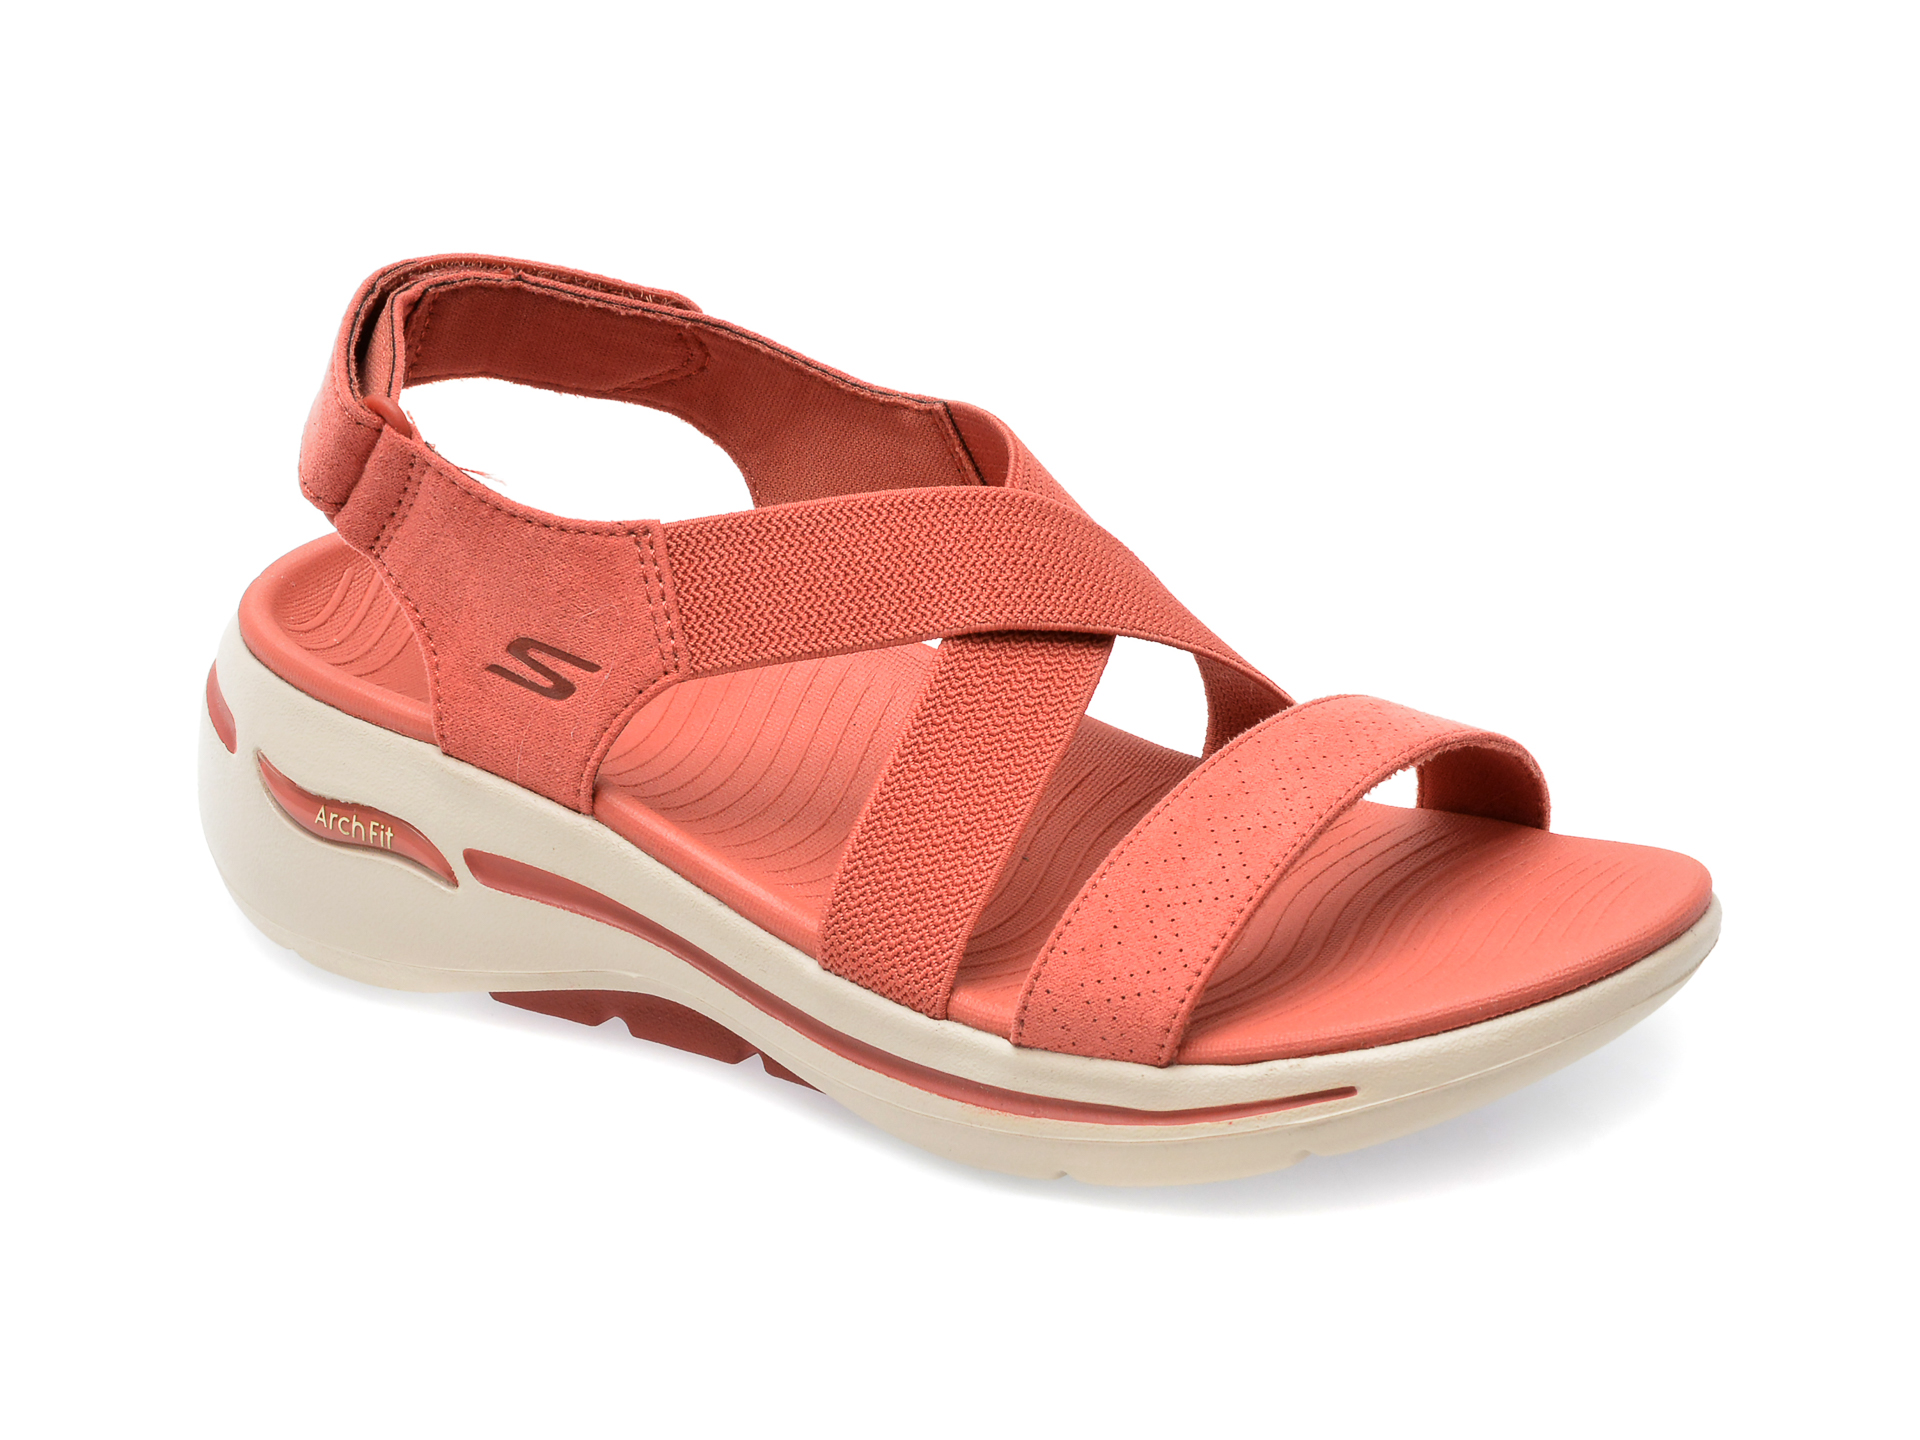 Sandale SKECHERS rosii, GO WALK ARCH FIT SANDAL, din material textil